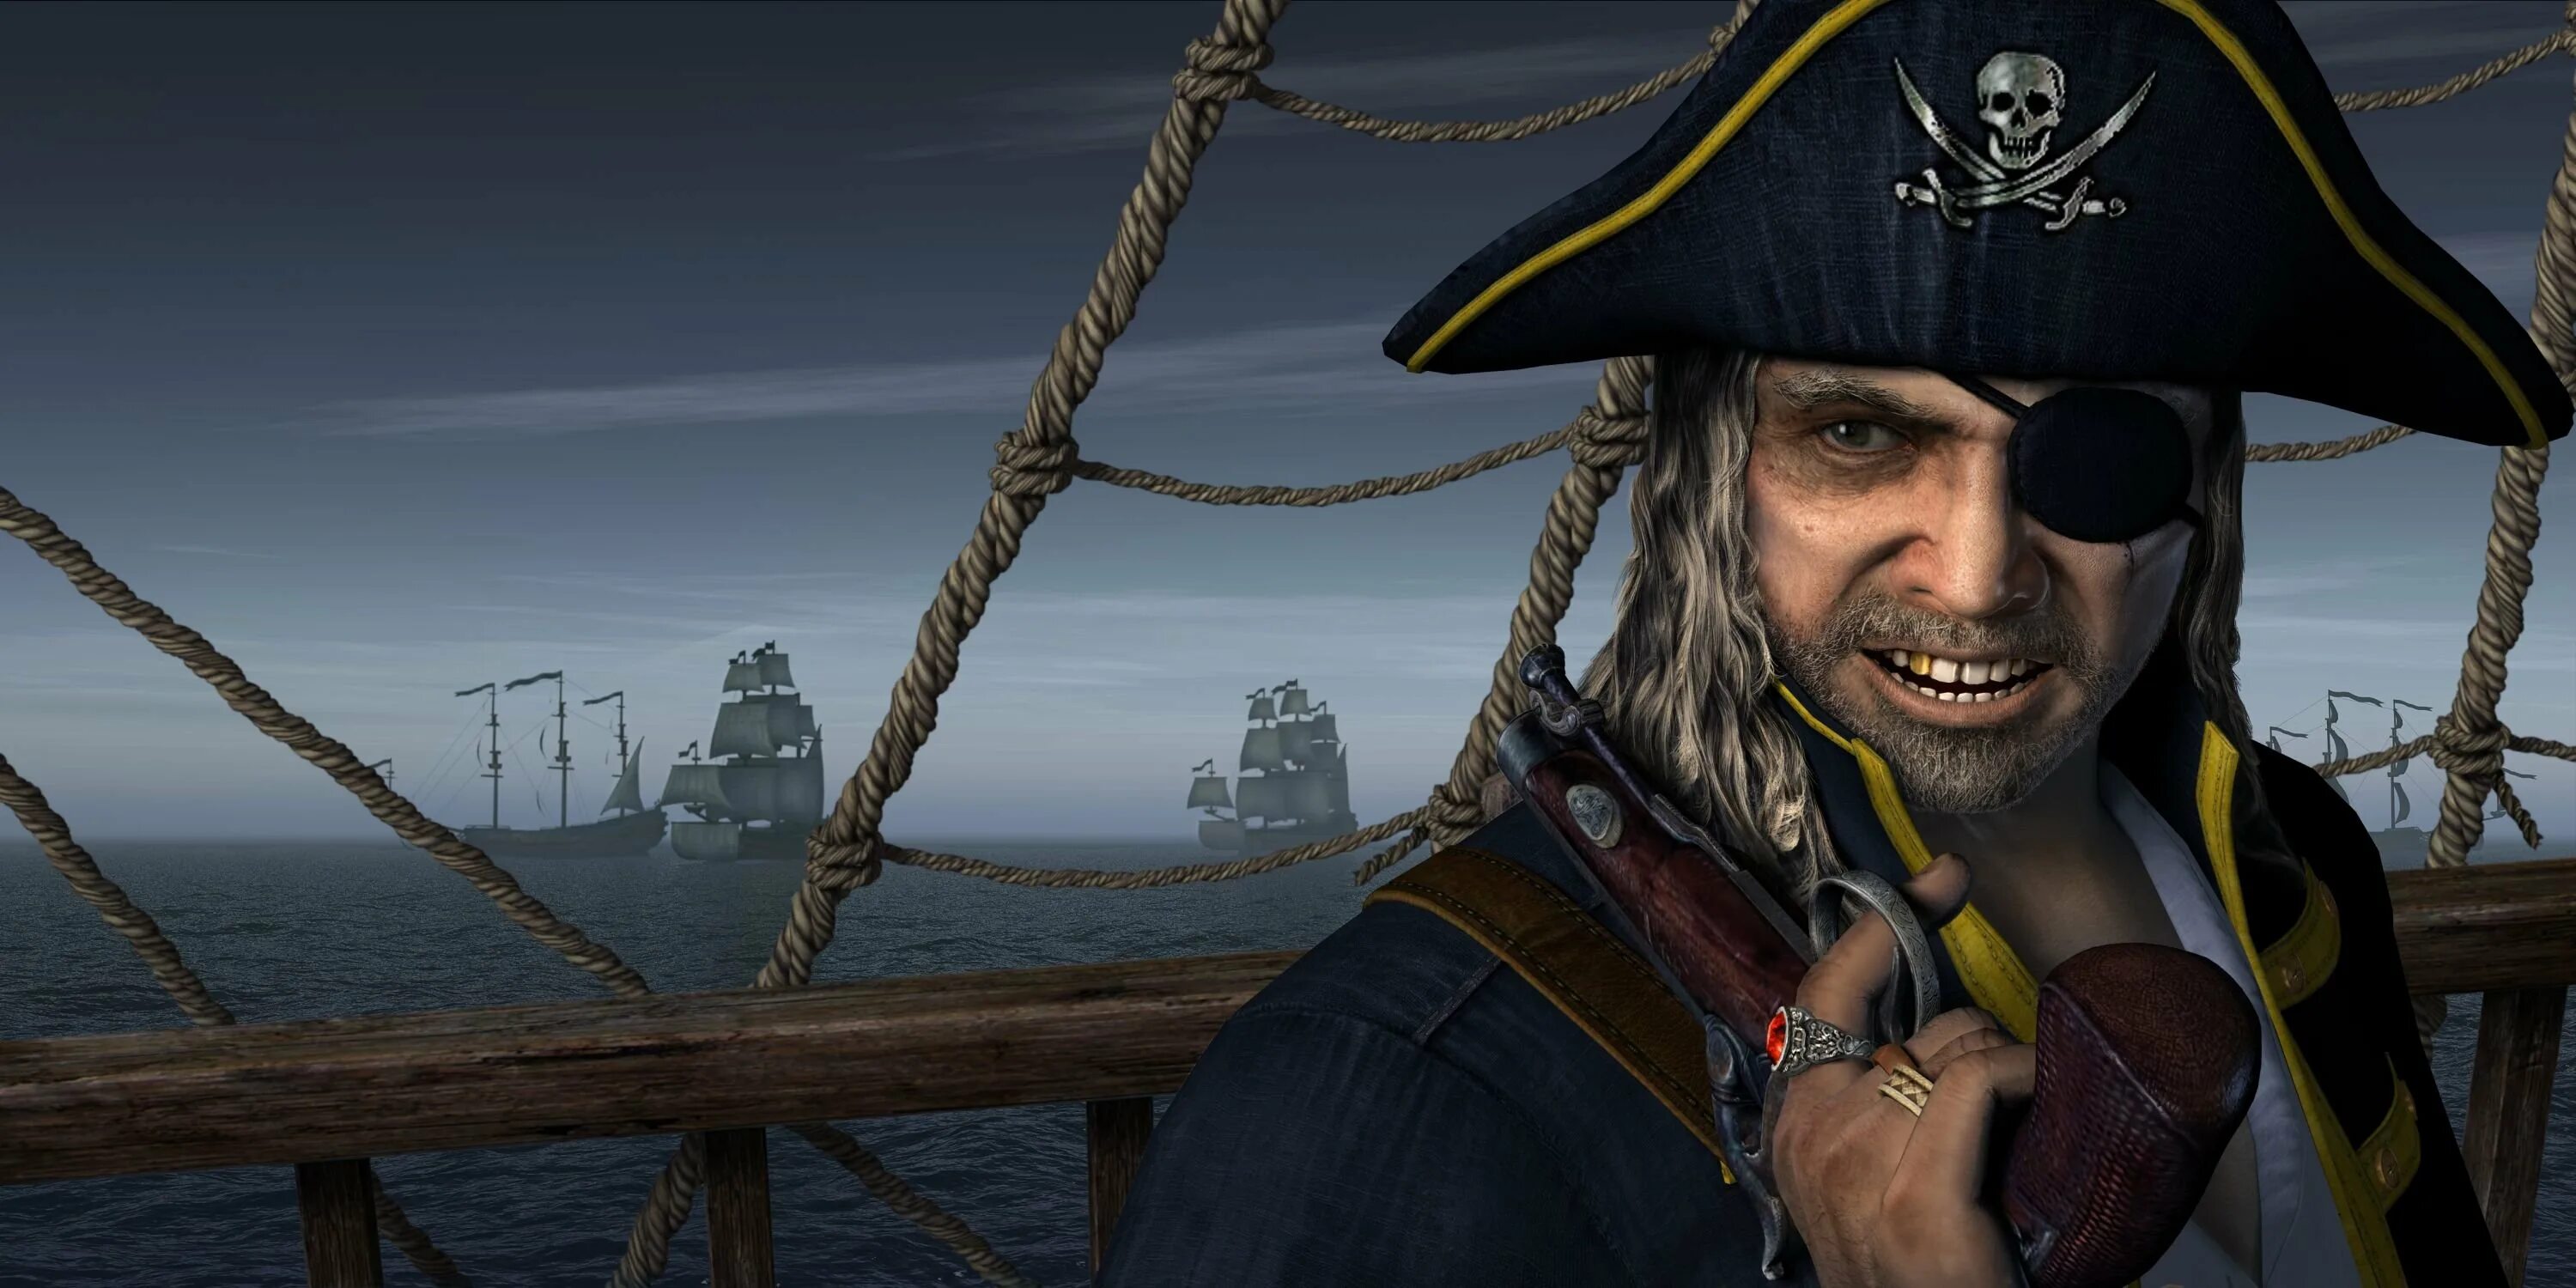 Даниэль Монбар пират. Флибустьеры пираты Корсары. Джек Воробей одноглазый пират.